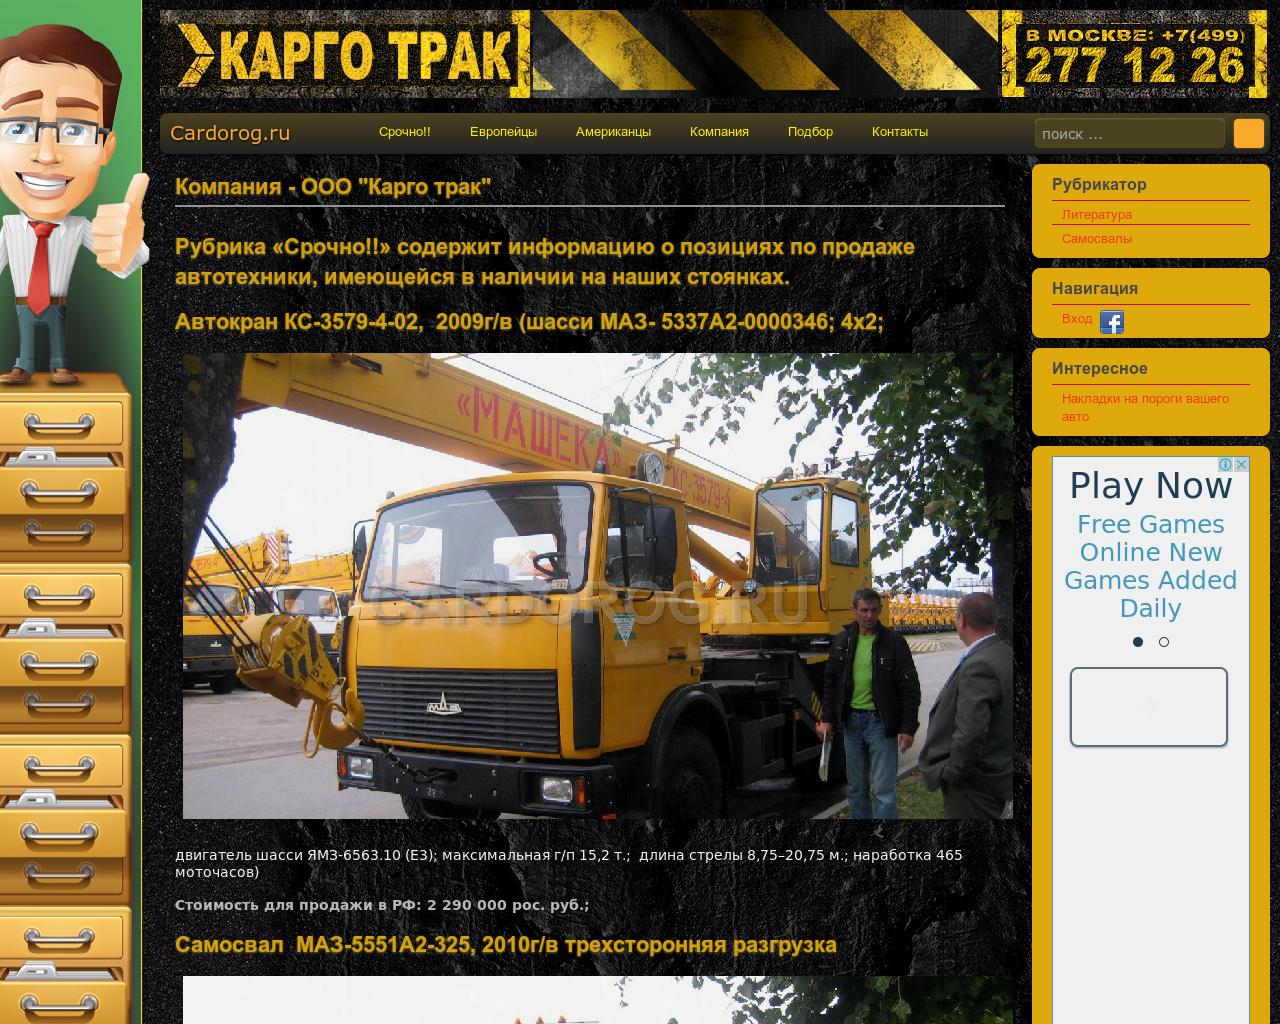 Изображение сайта cardorog.ru в разрешении 1280x1024